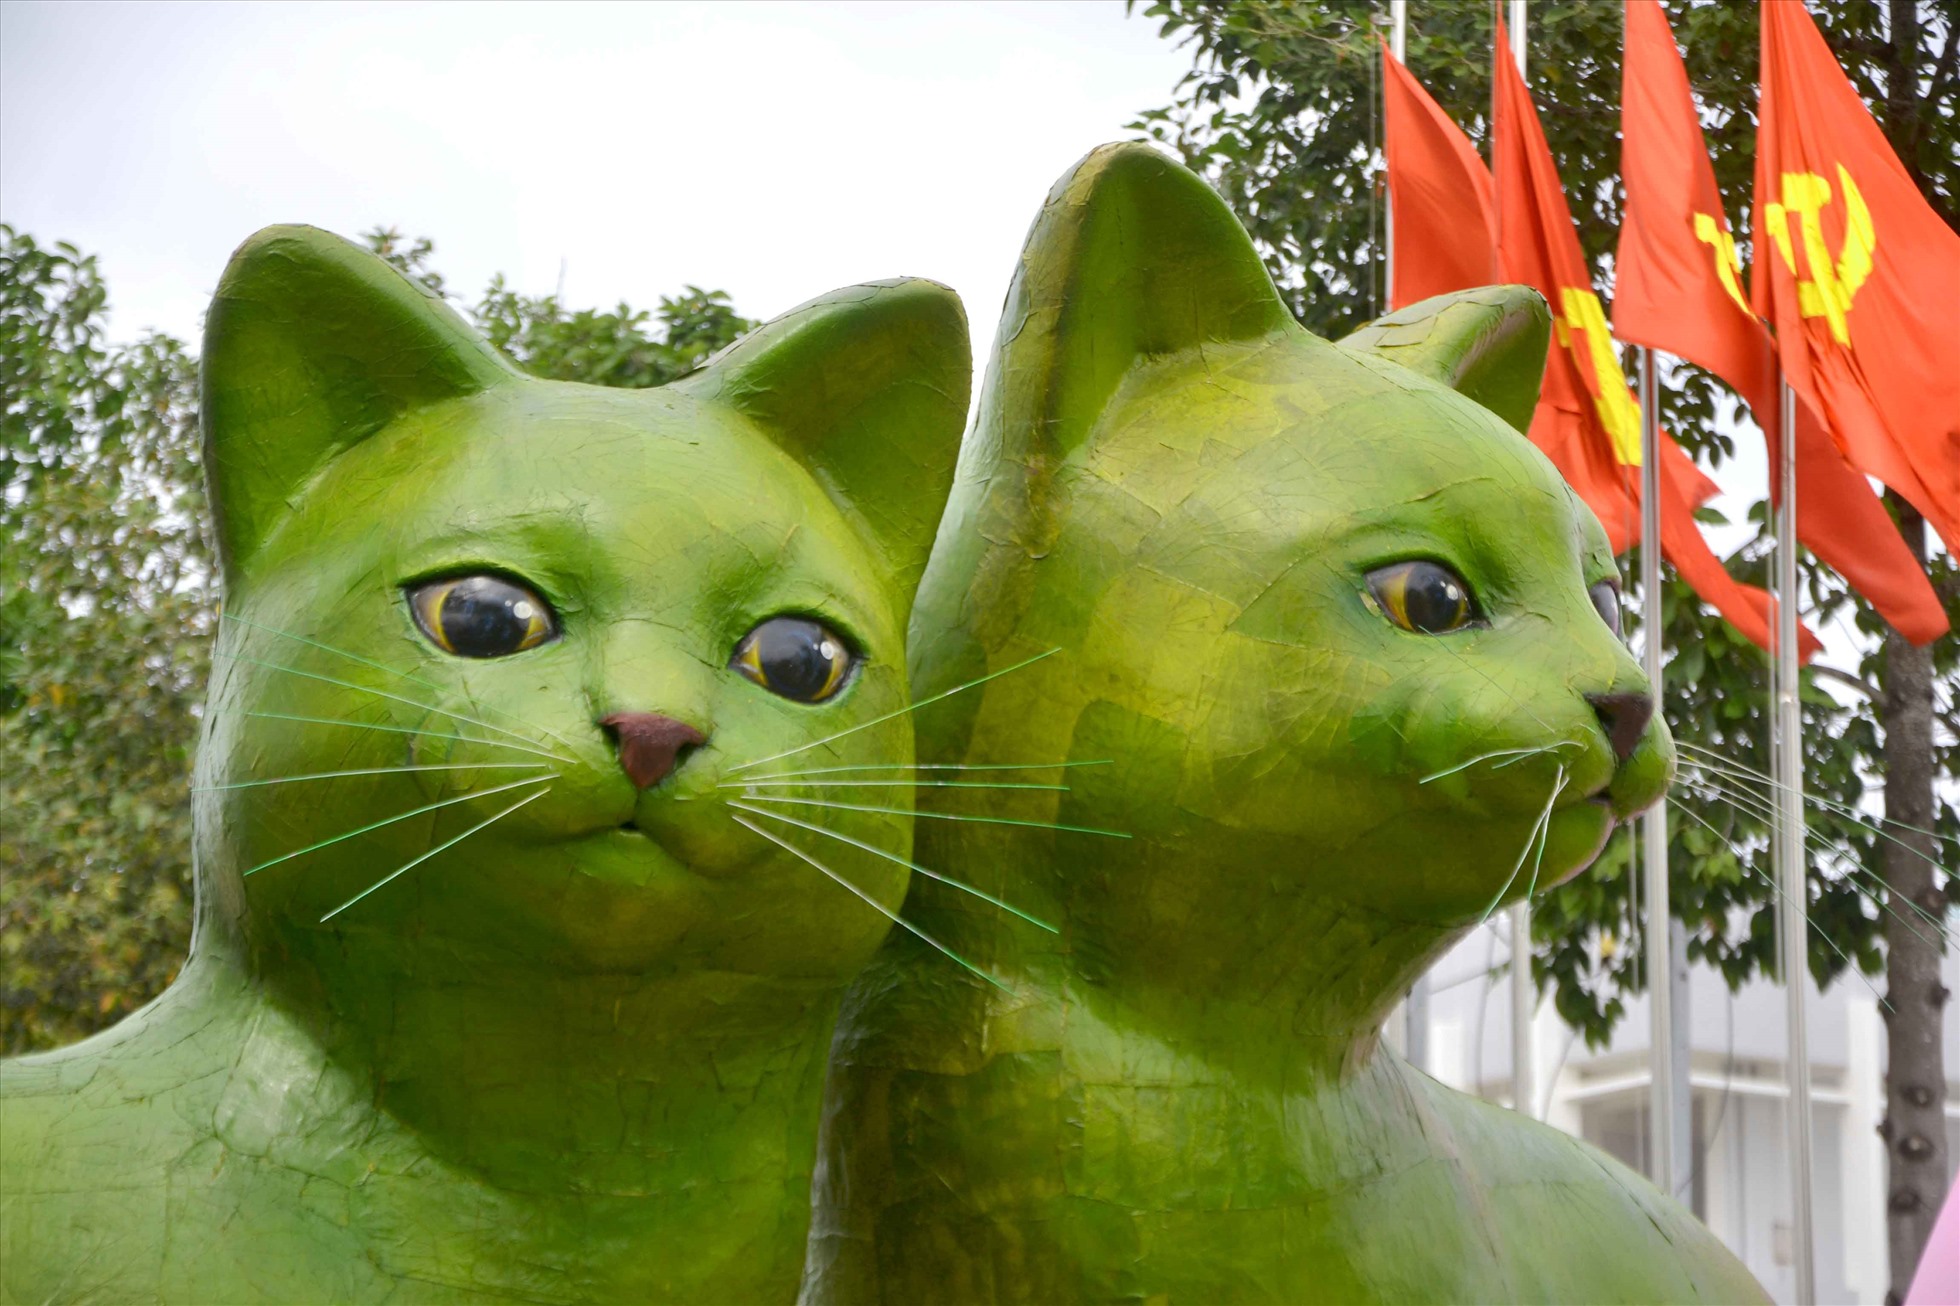 Dù được chế tác từ lá sen đã sấy khô, nhưng cặp đôi mèo có gương mặt khá tươi tắn, sống động. Ảnh: Lục Tùng